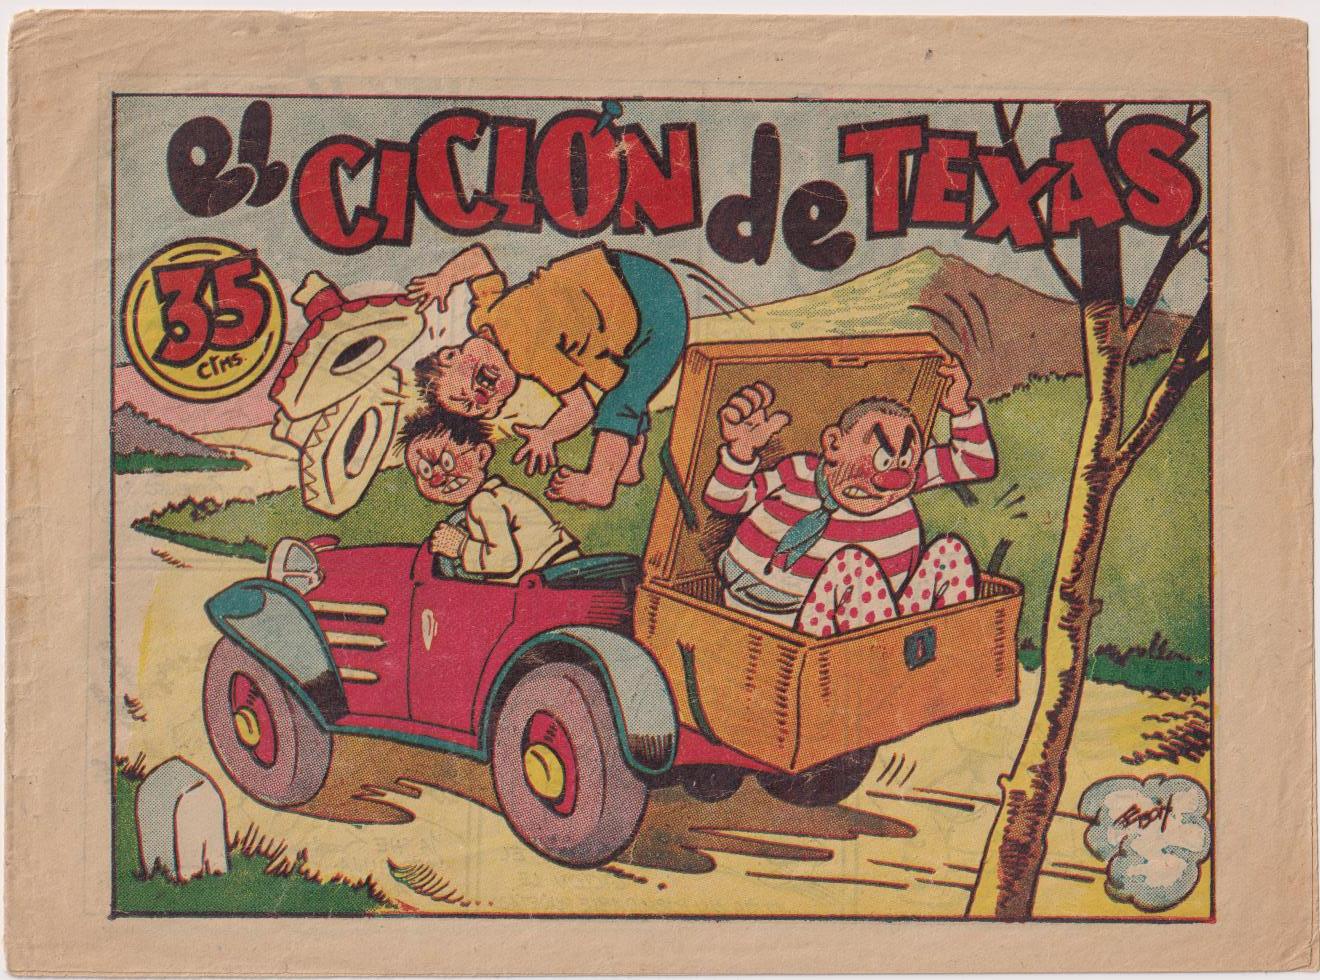 Pingo, Tongo y Pilongo. El Ciclón de Texas. Marco 1949